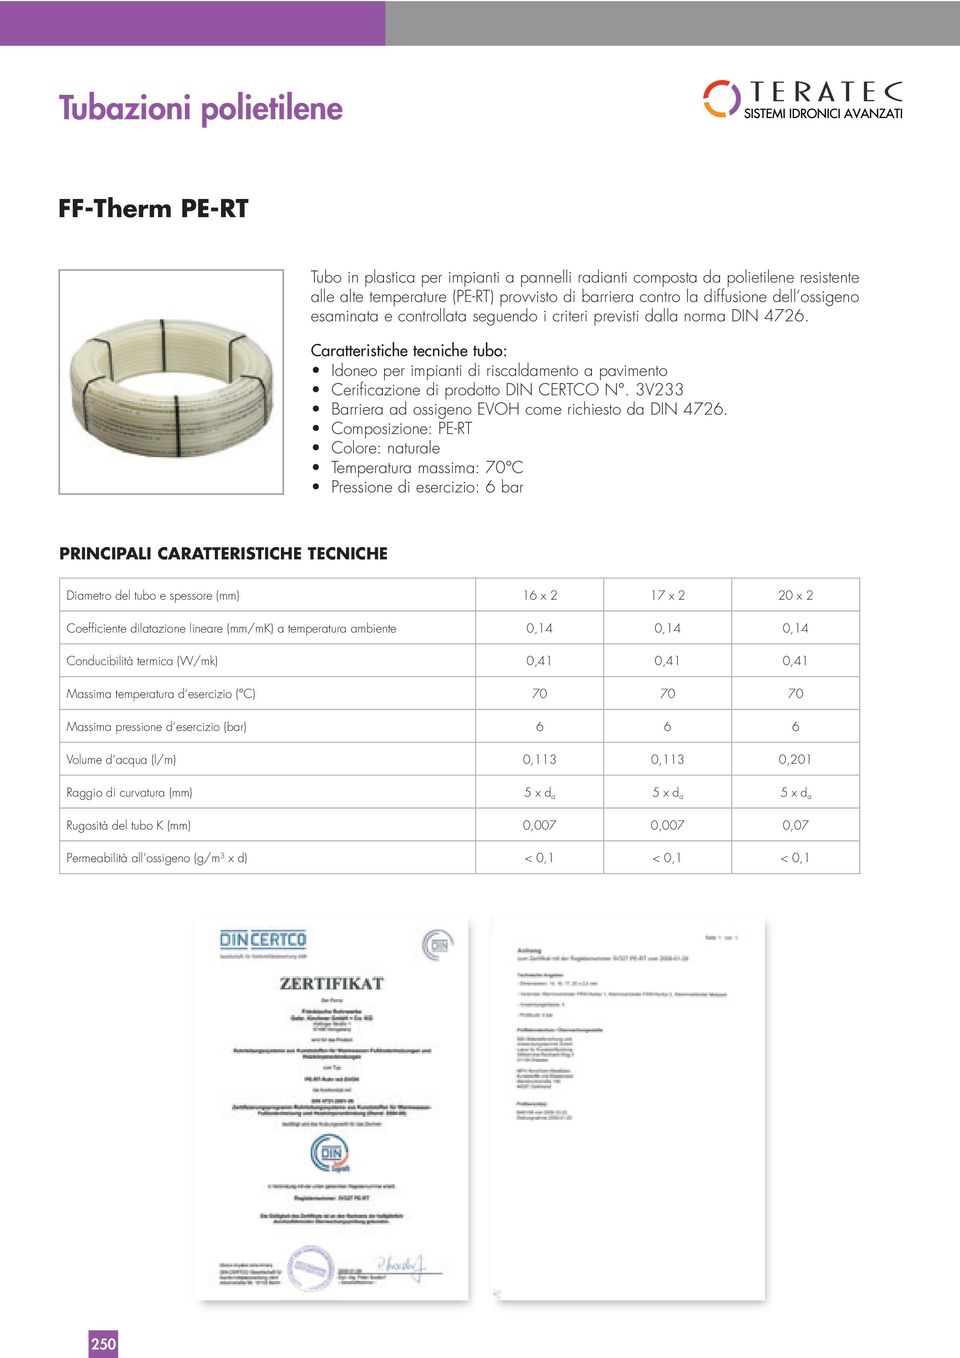 Caratteristiche tecniche tubo: PRINCIPALI CARATTERISTICHE TECNICHE Diametro del tubo e spessore (mm) 16 x 2 17 x 2 20 x 2 Coefficiente dilatazione lineare (mm/mk) a temperatura ambiente 0,14 0,14